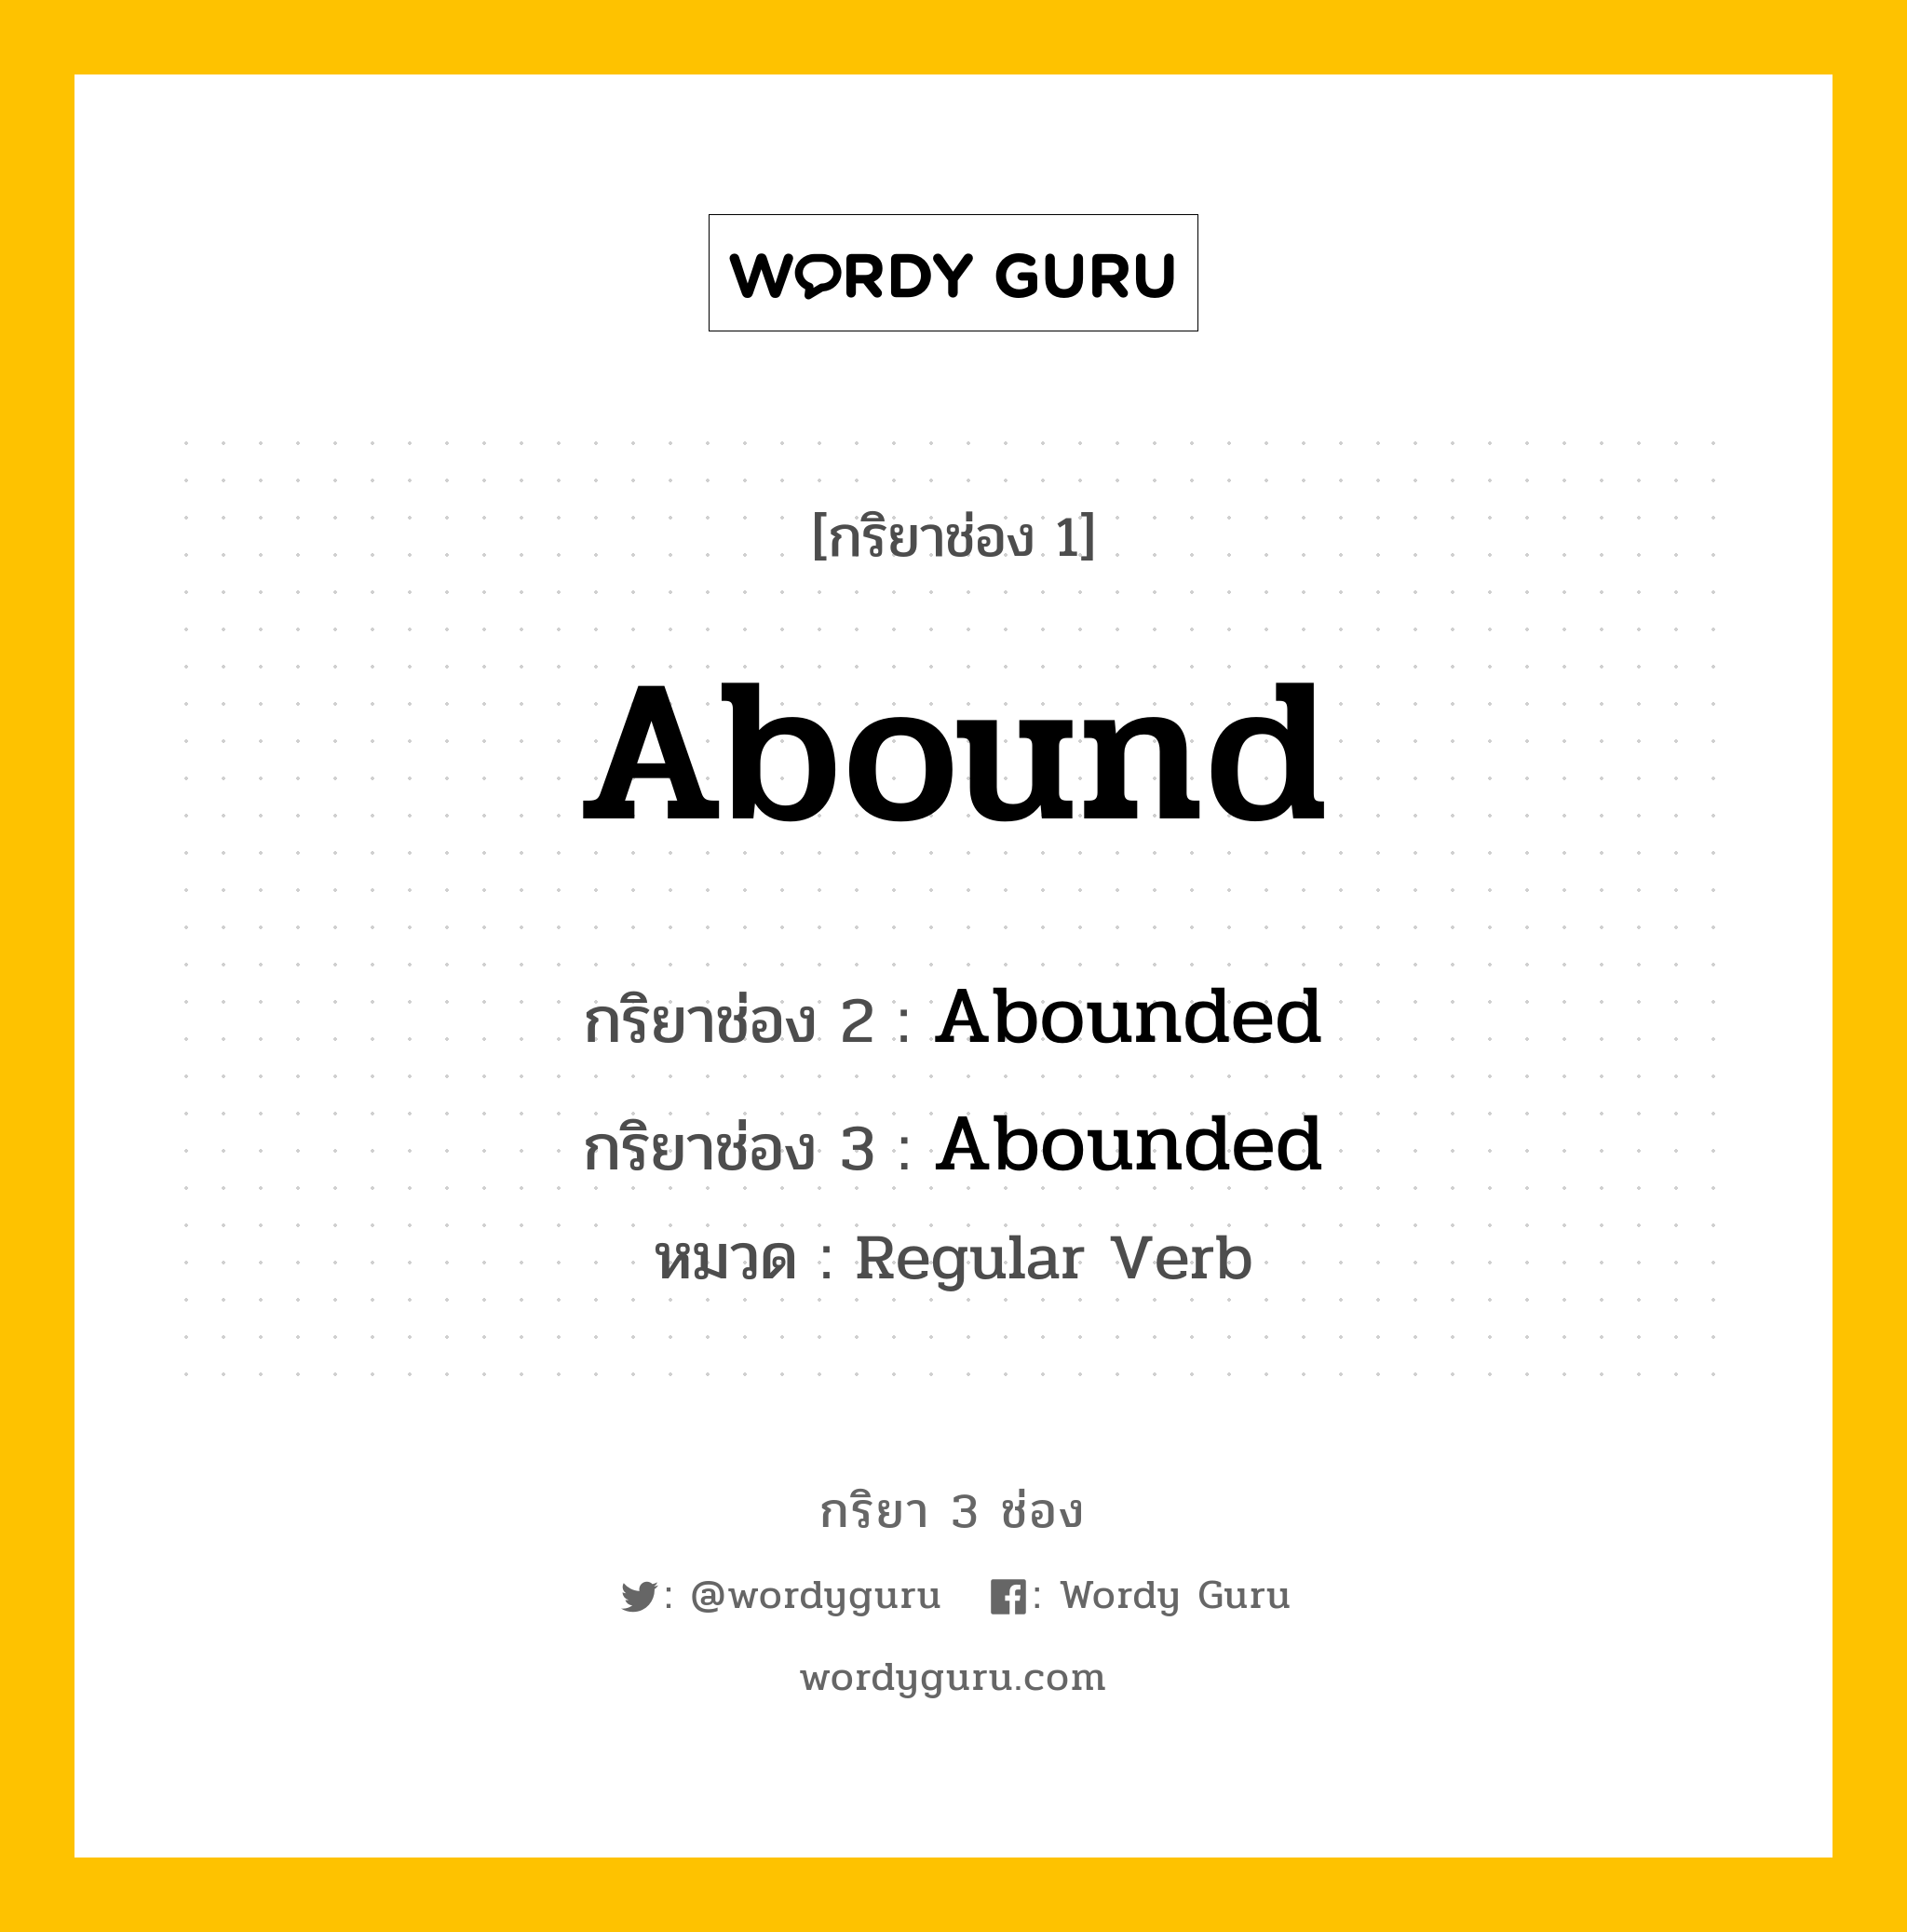 Abound มีกริยา 3 ช่องอะไรบ้าง? คำศัพท์ในกลุ่มประเภท Regular Verb, กริยาช่อง 1 Abound กริยาช่อง 2 Abounded กริยาช่อง 3 Abounded หมวด Regular Verb หมวด Regular Verb